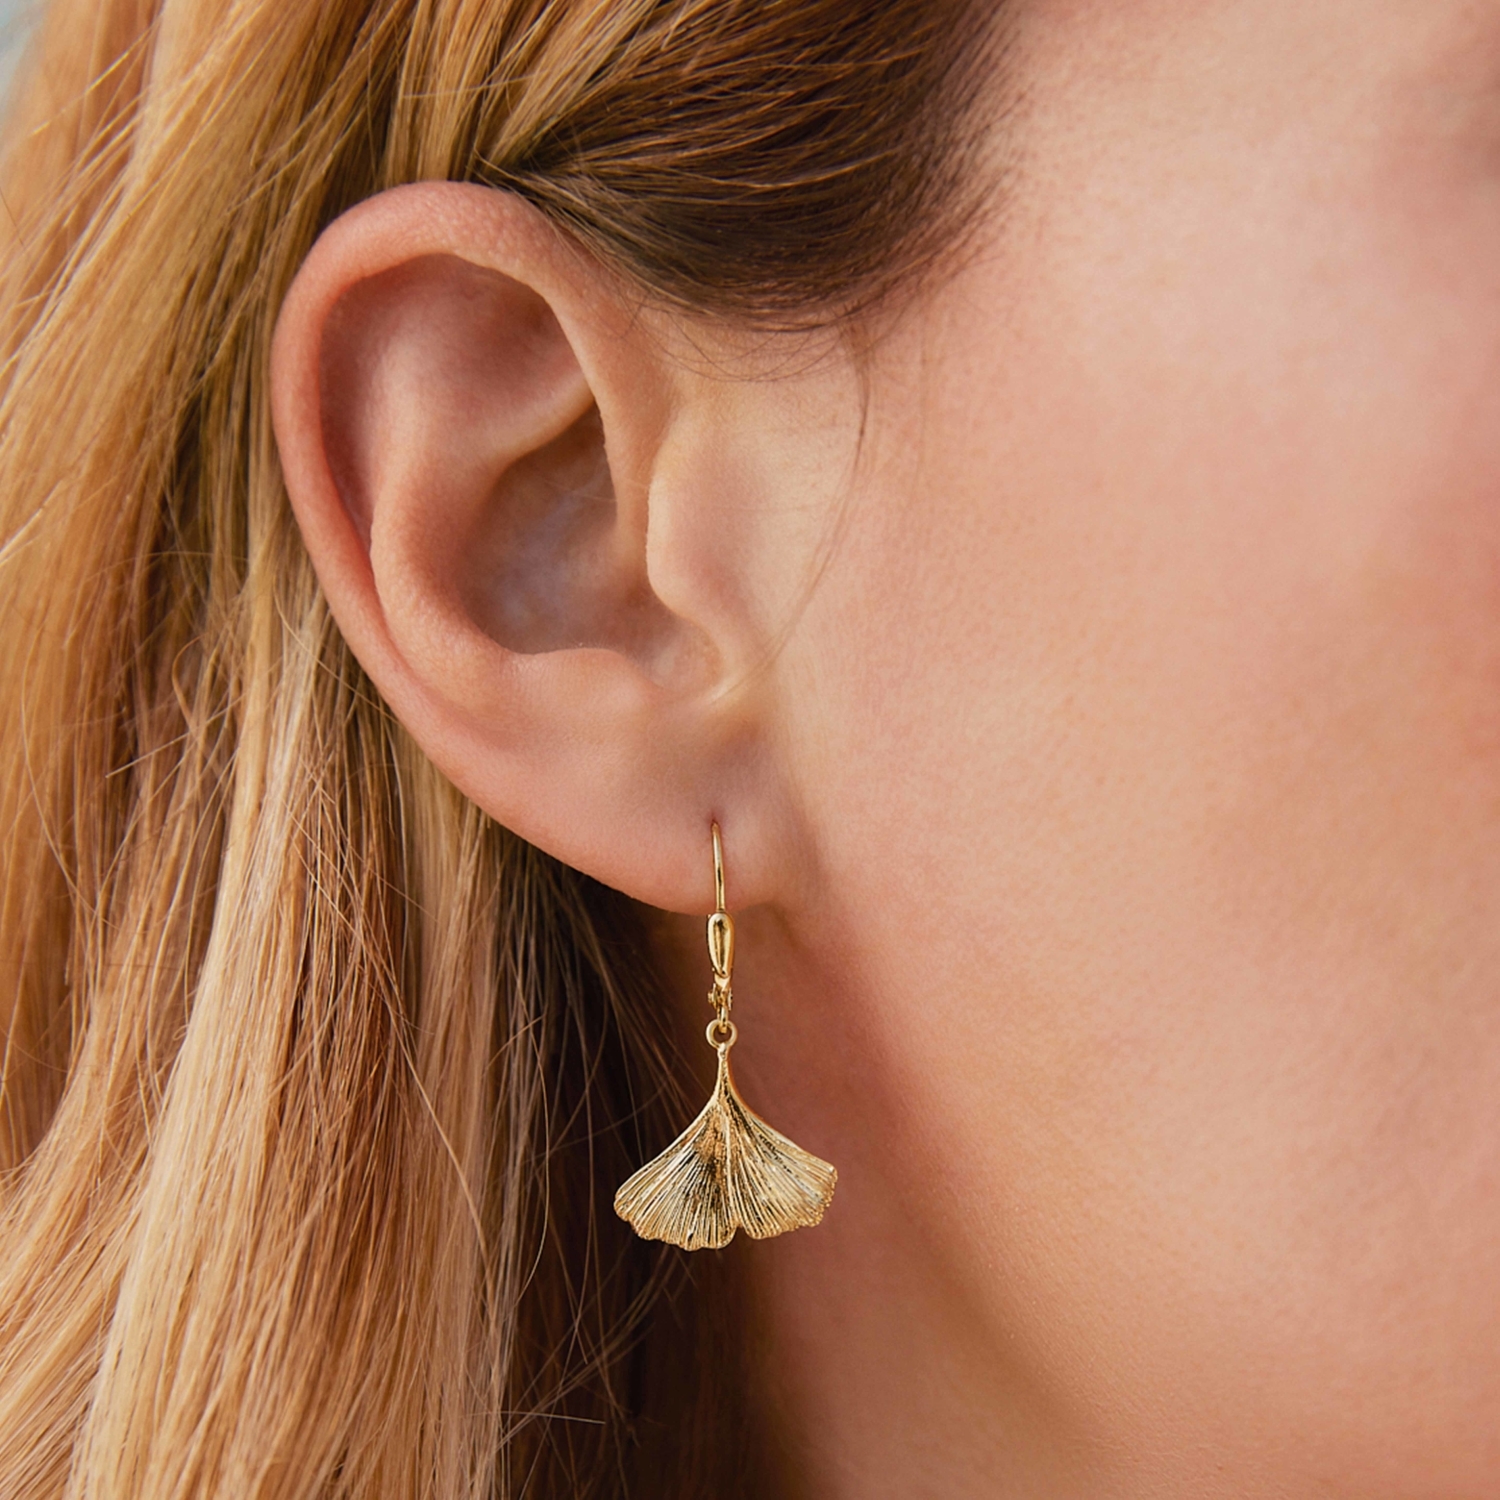 Ohrhänger für Damen, Gold 375, Ginkgoblatt